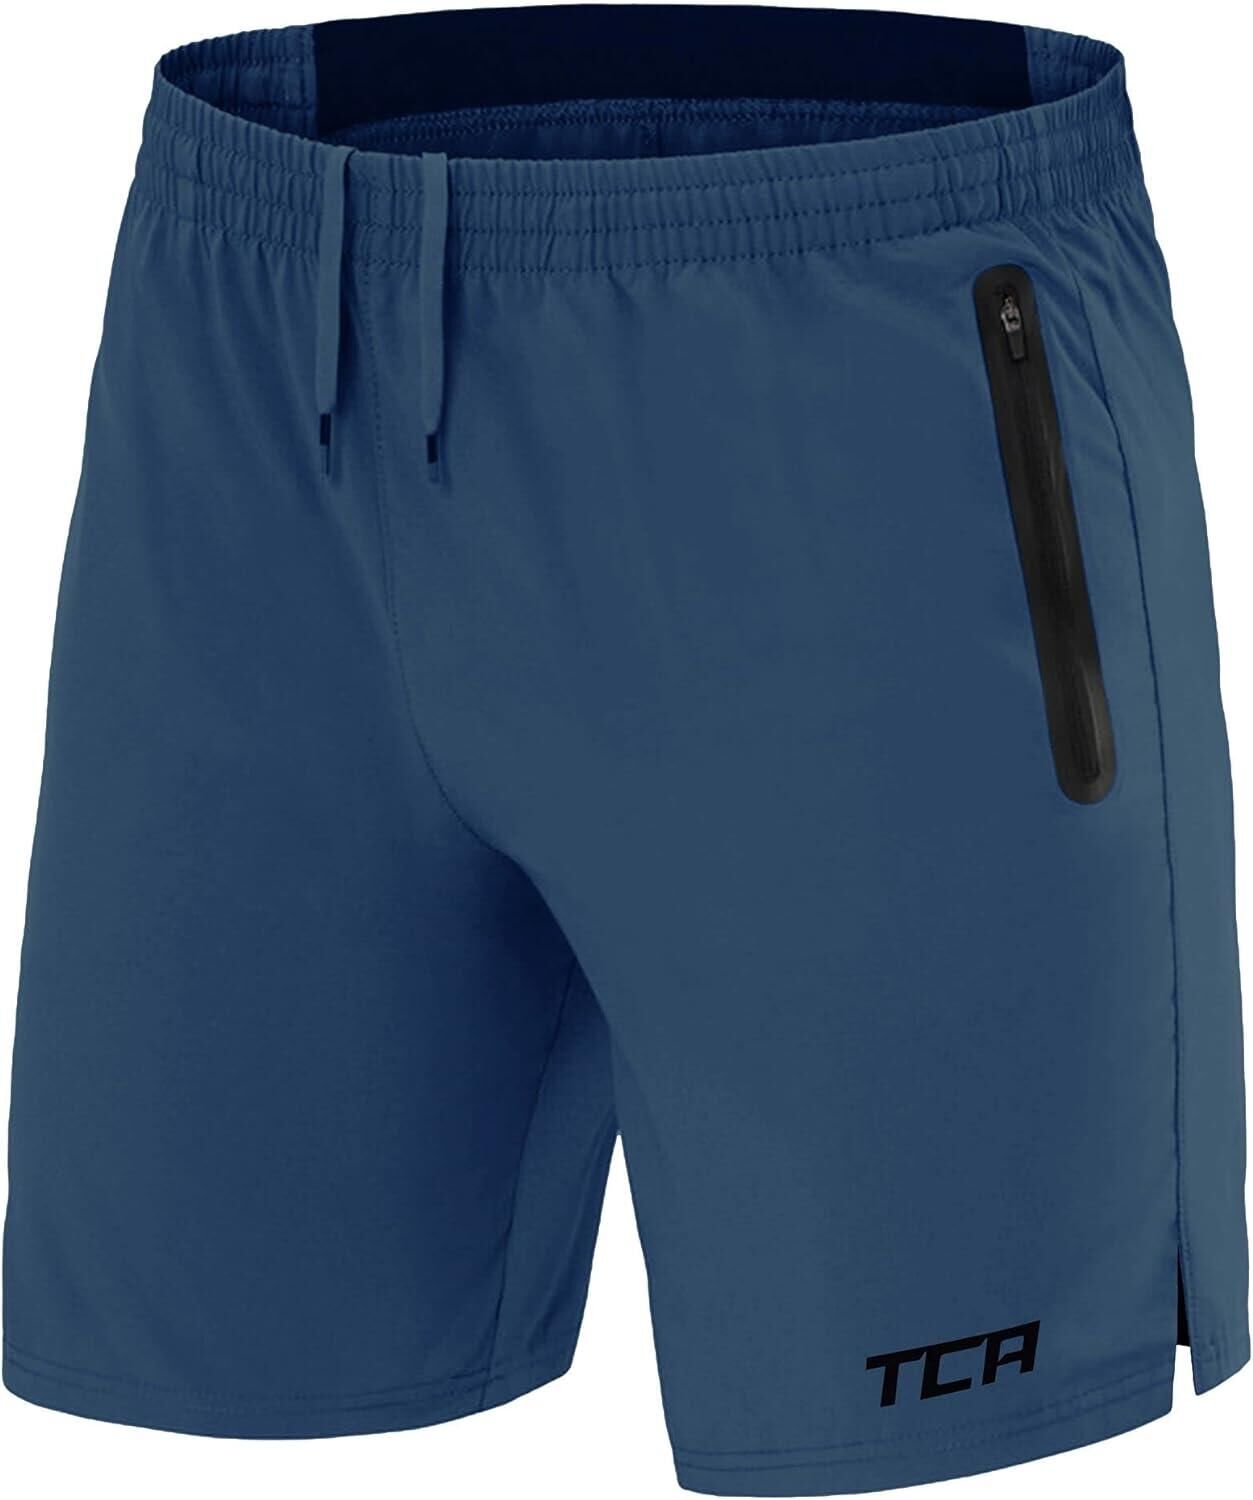 TCA Men's Elite Tech Lightweight Running Shorts with Zip Pockets - Iron Blue